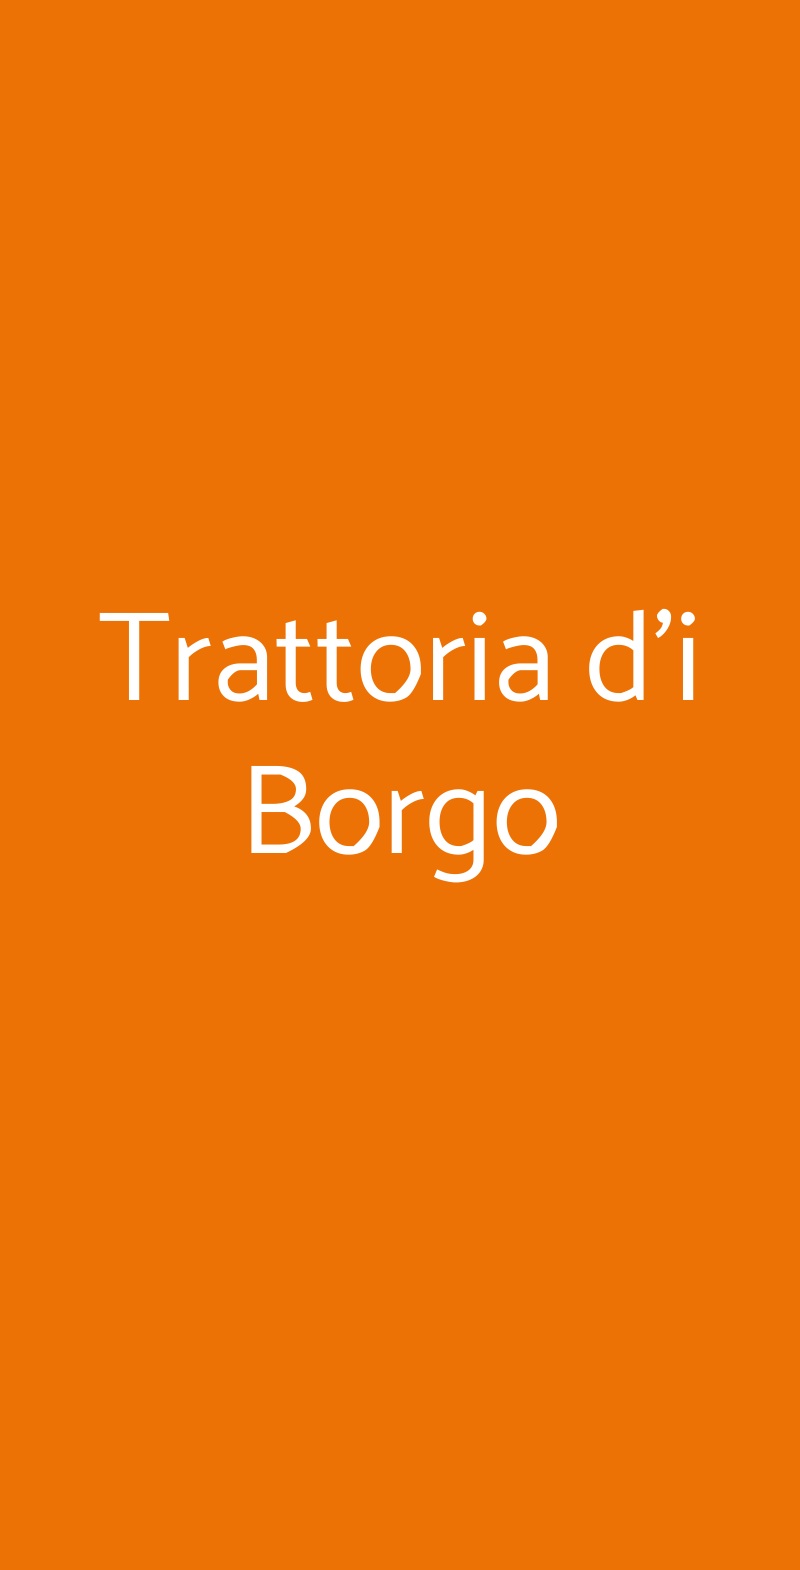 Trattoria d'i Borgo Greve in Chianti menù 1 pagina